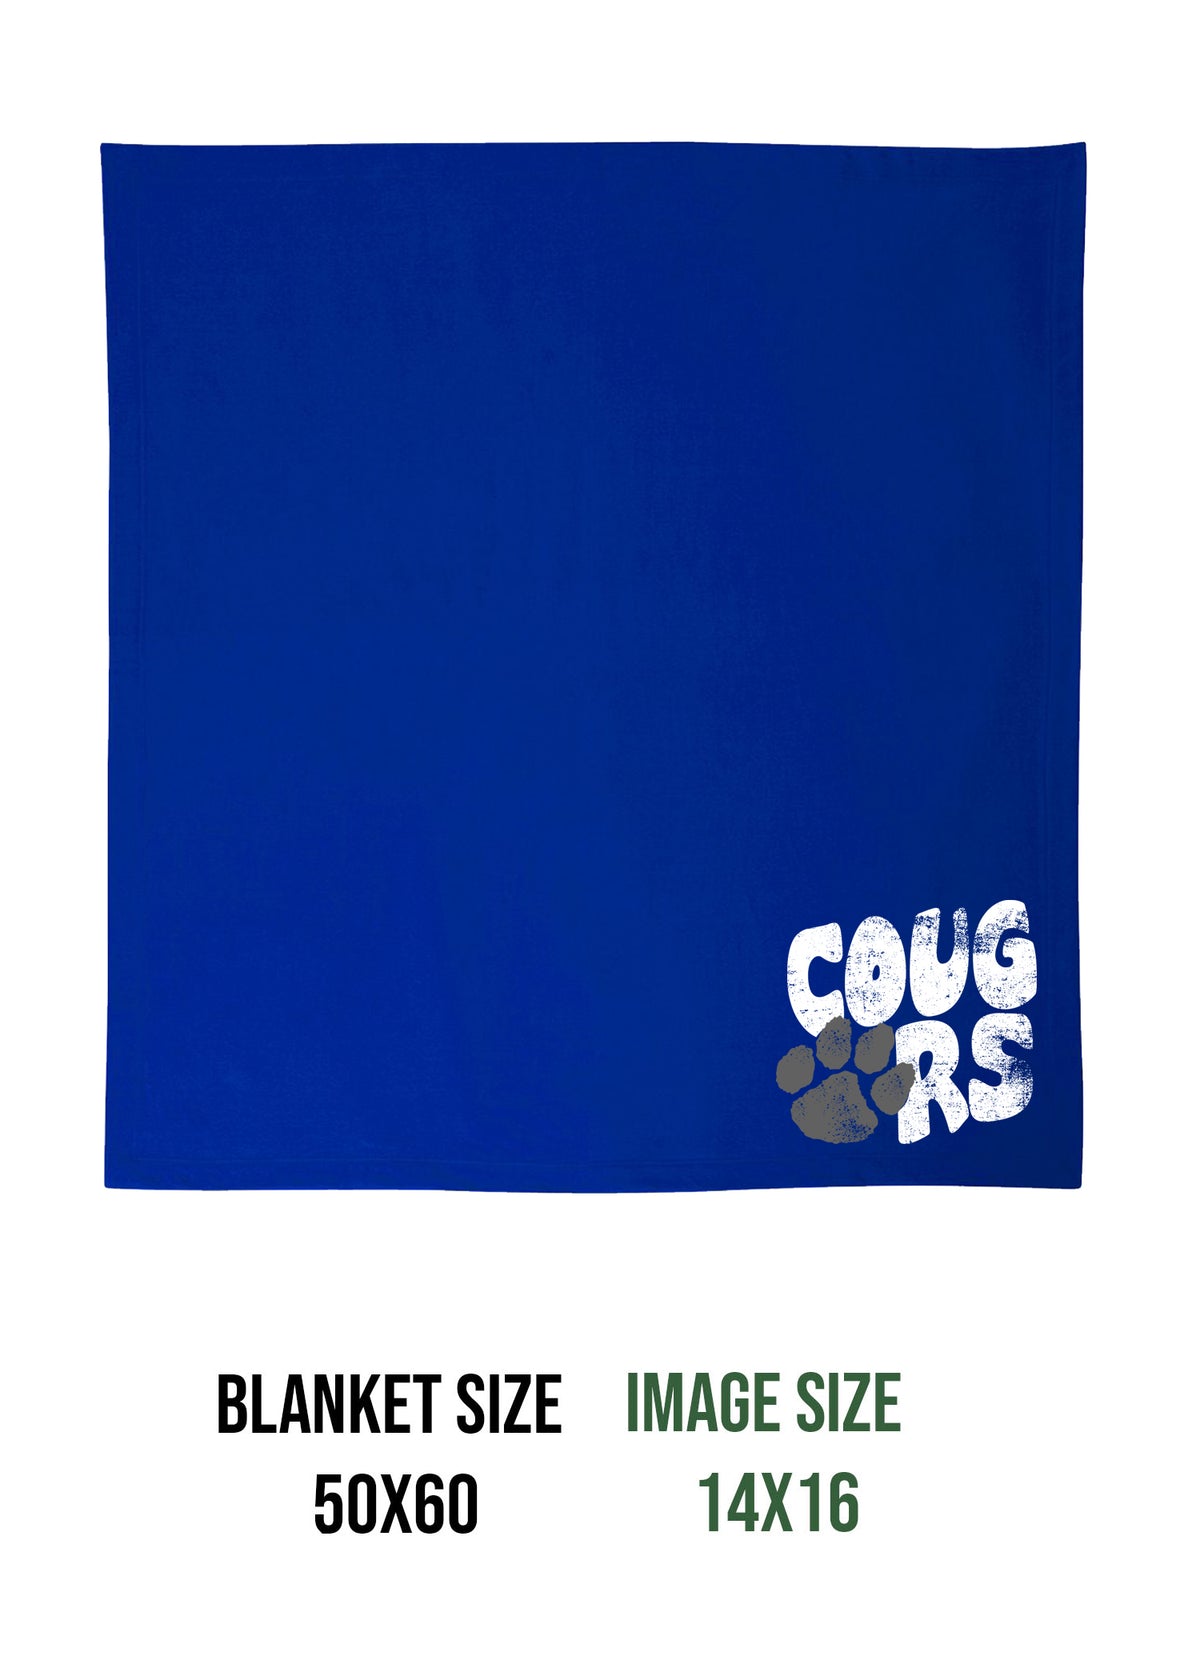 KRHS Design 2 Blanket